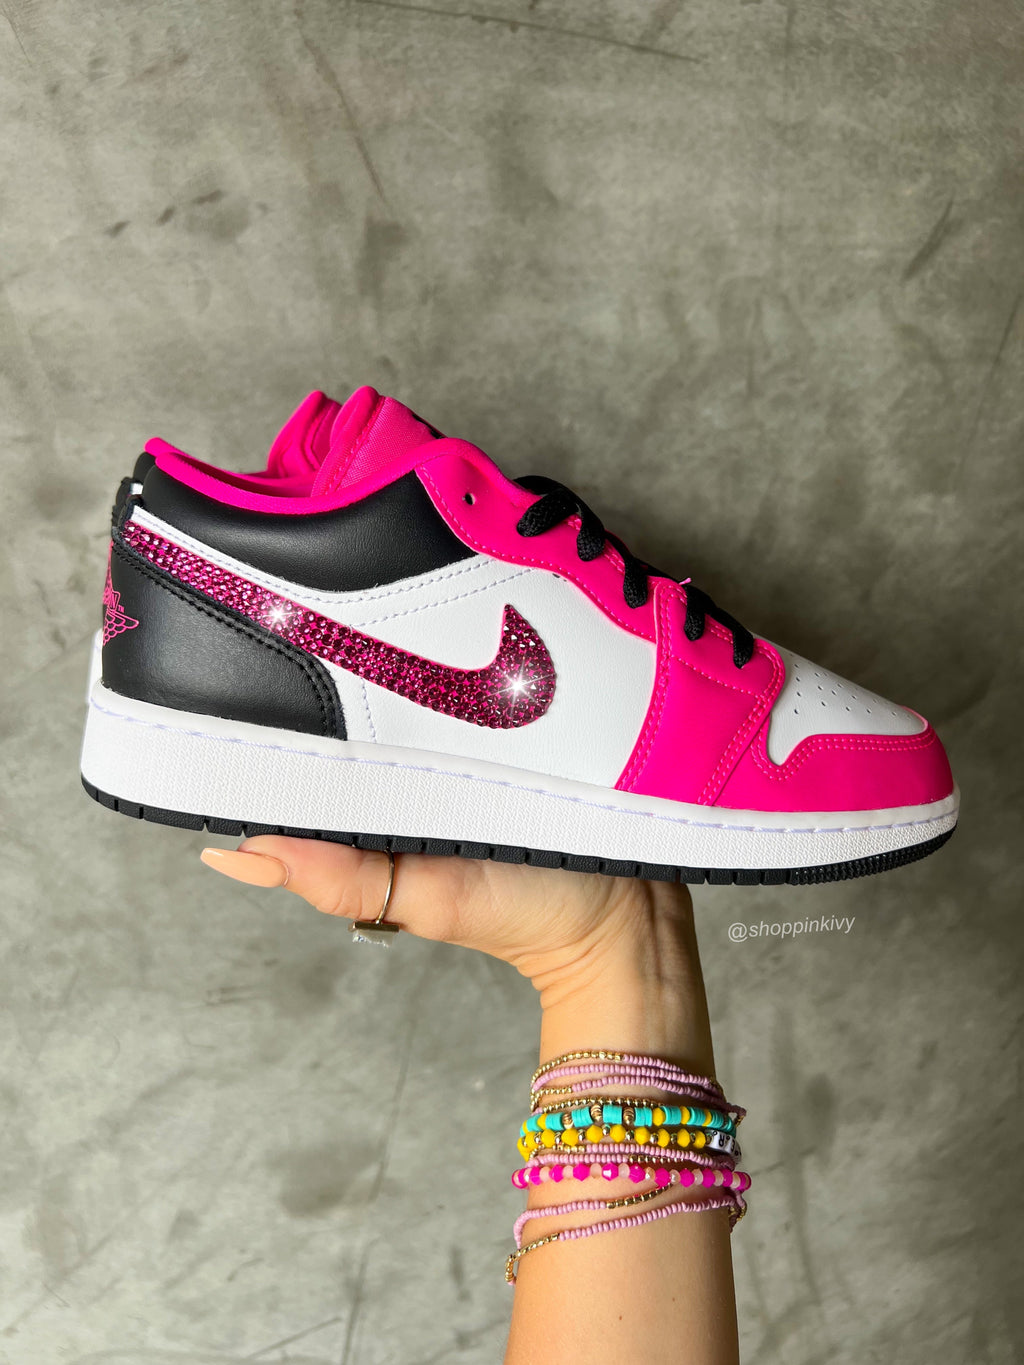 SIZE 6.5 Hot Pink Swarovski Women’s Air Jordan 1 Low Shoes